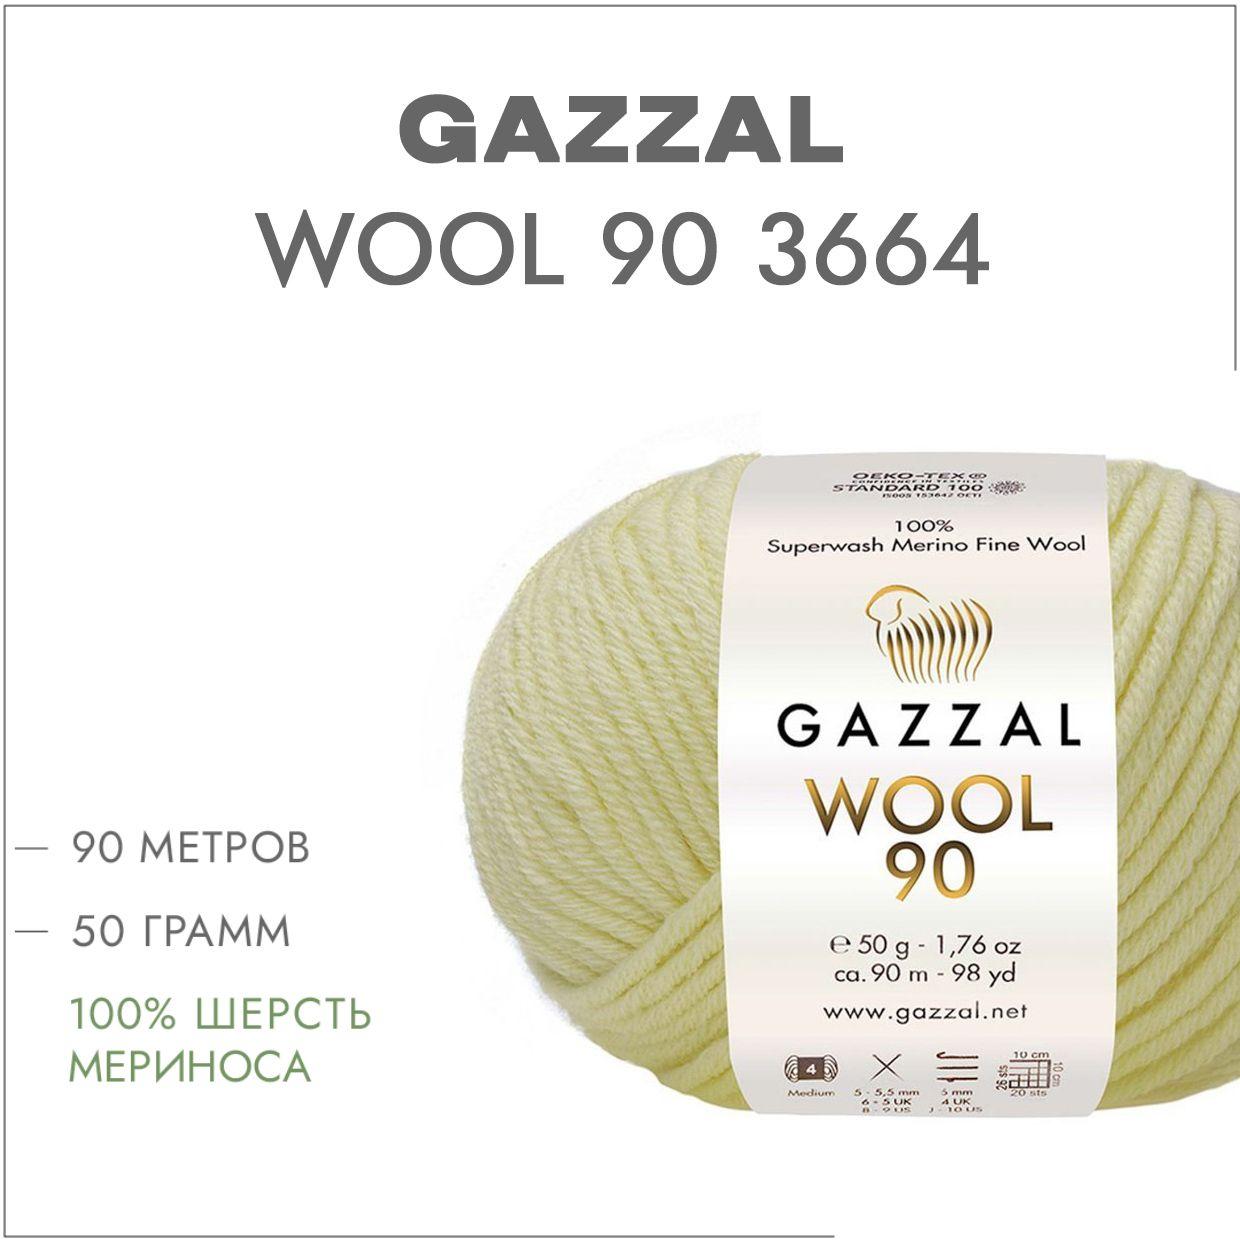 Пряжа Gazzal Wool 90 (Газзал Вул 90) цвет 3664 сливки